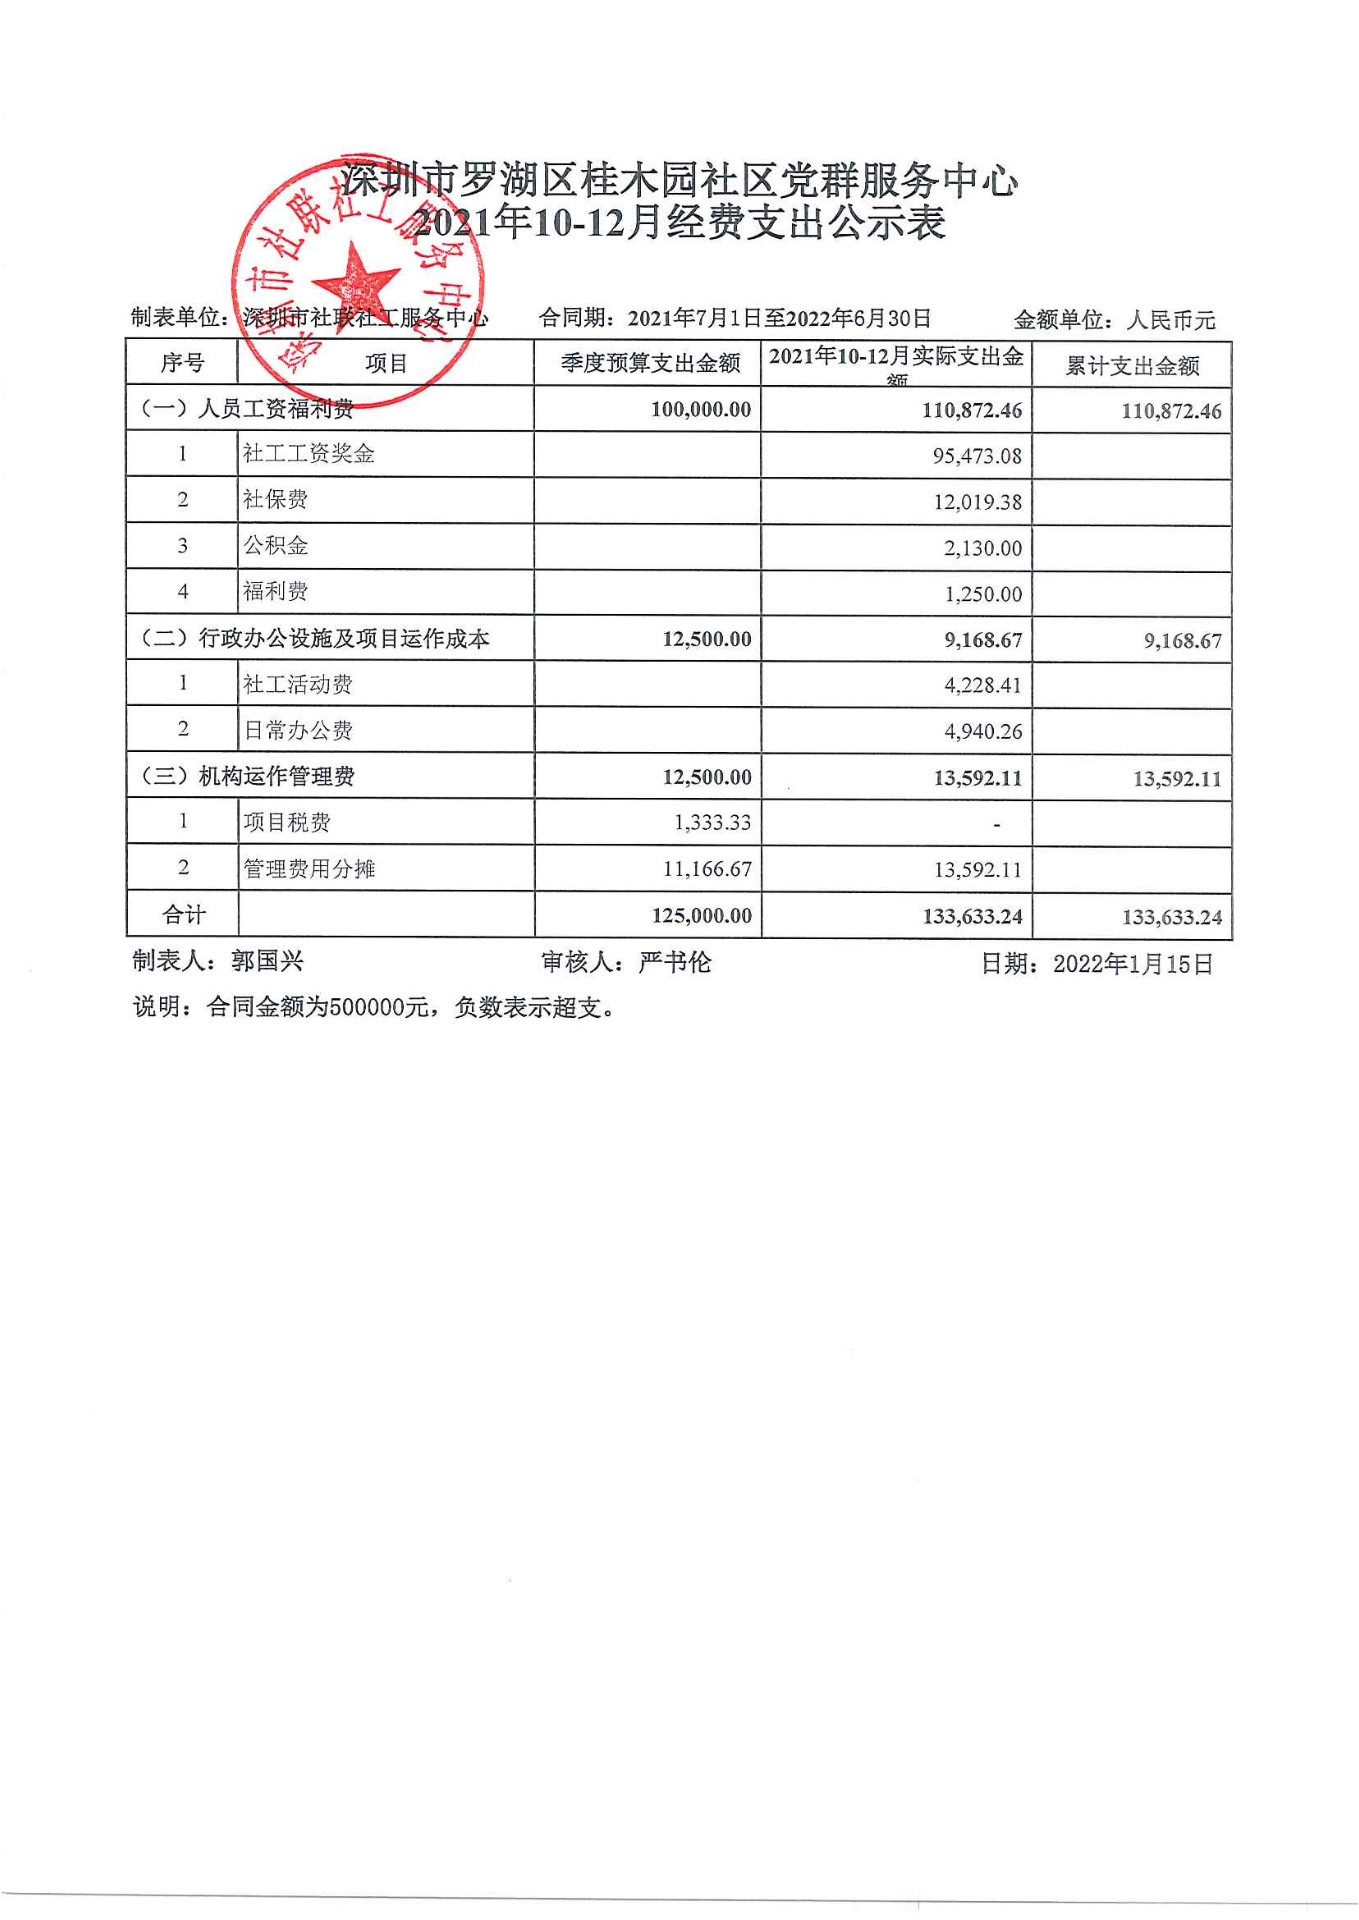 桂木园社区2021年10-12月财务公示表